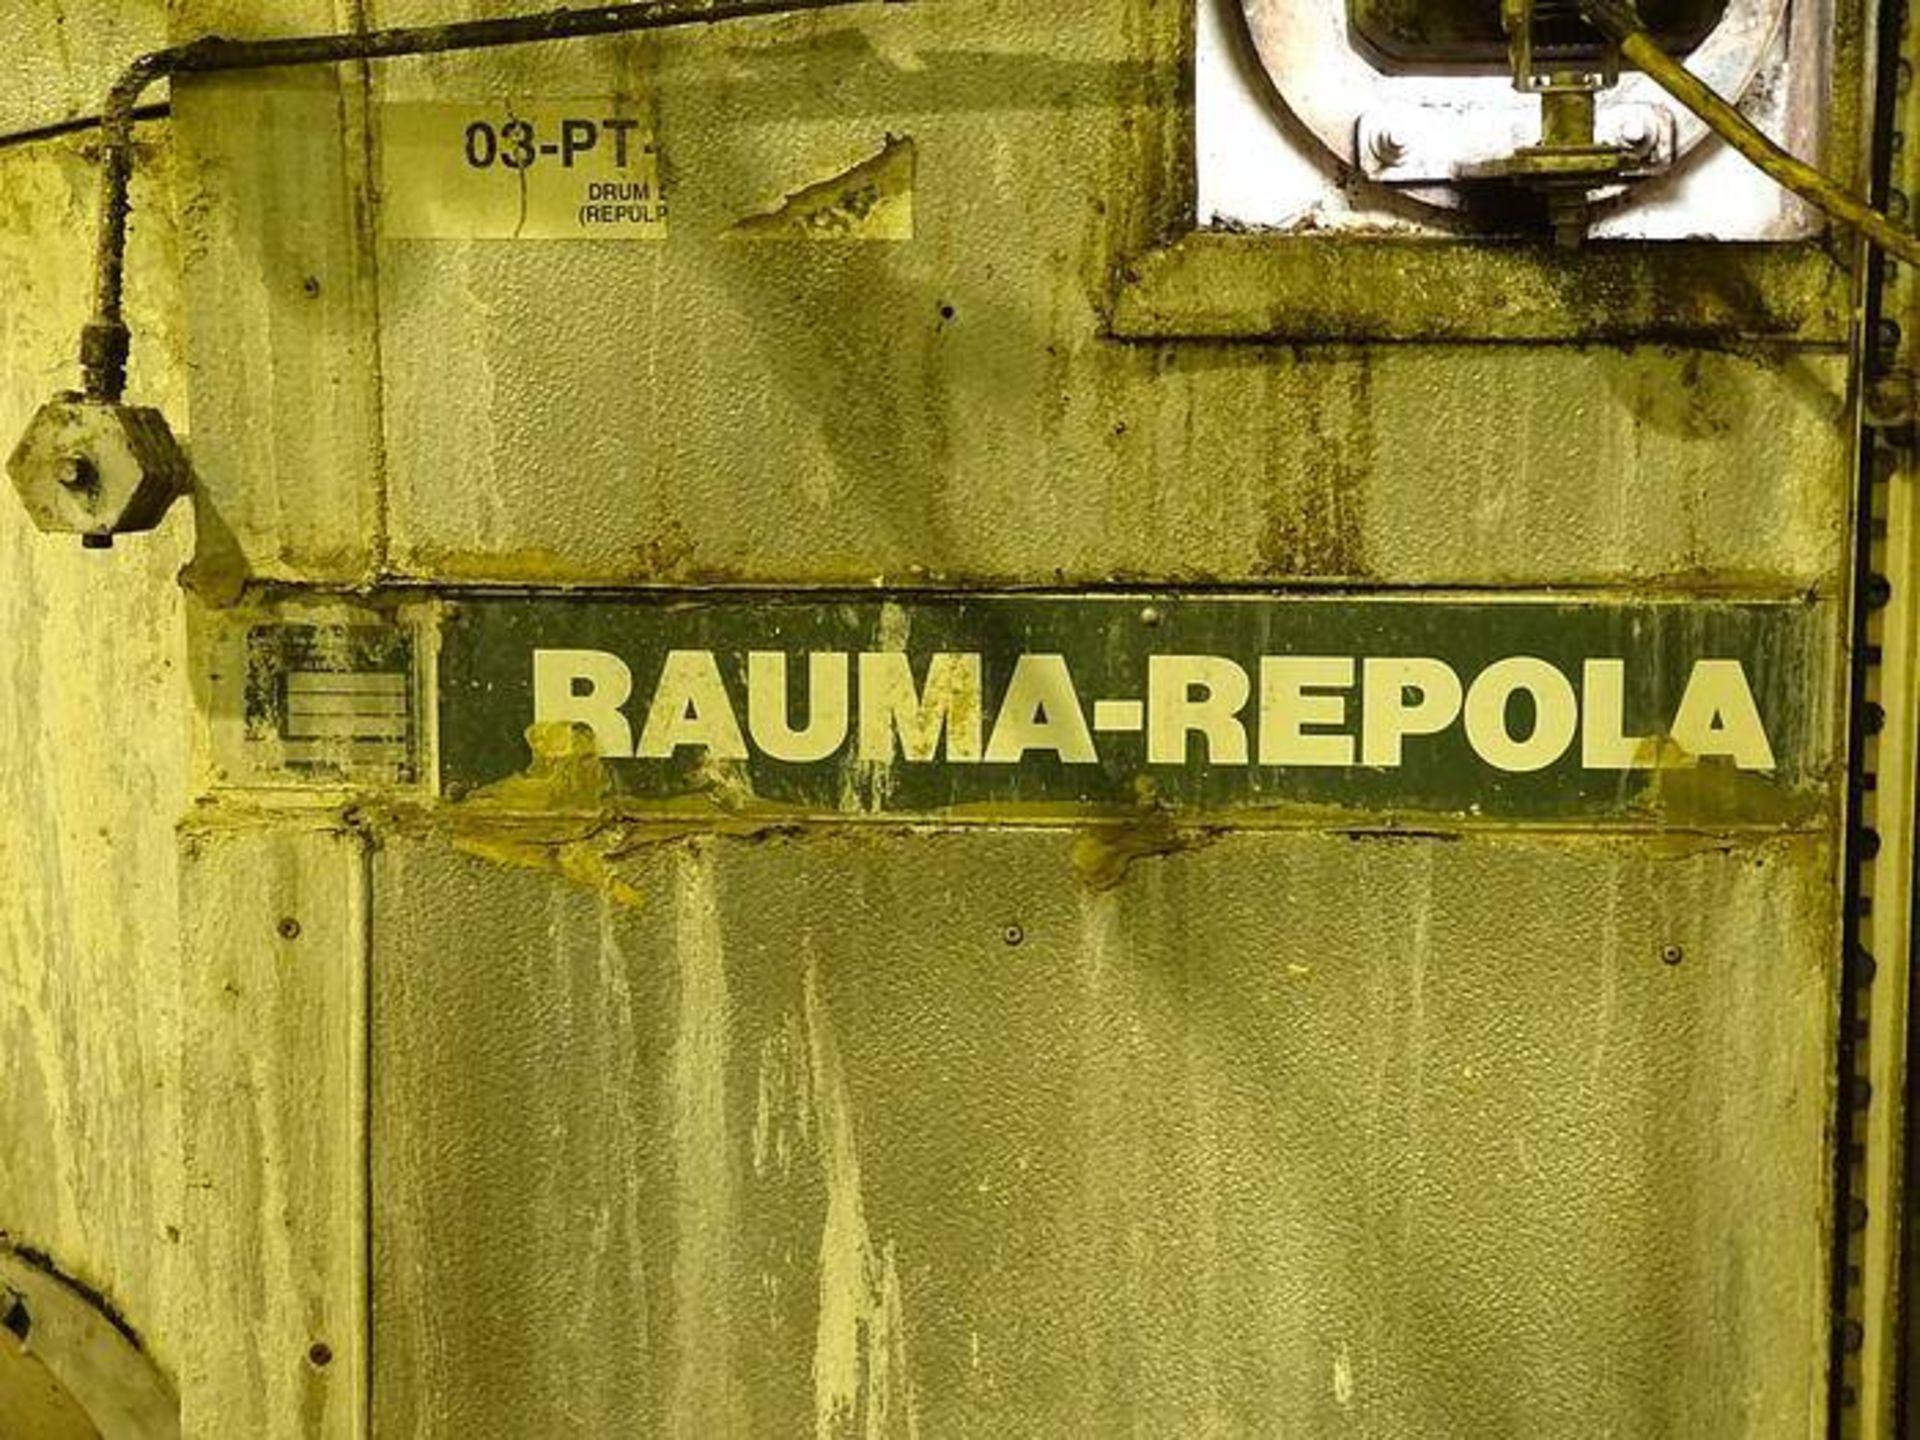 RAUMA REPOLA PWT4080 PRESSURE FILTER DRUM THICKENER - Image 6 of 6